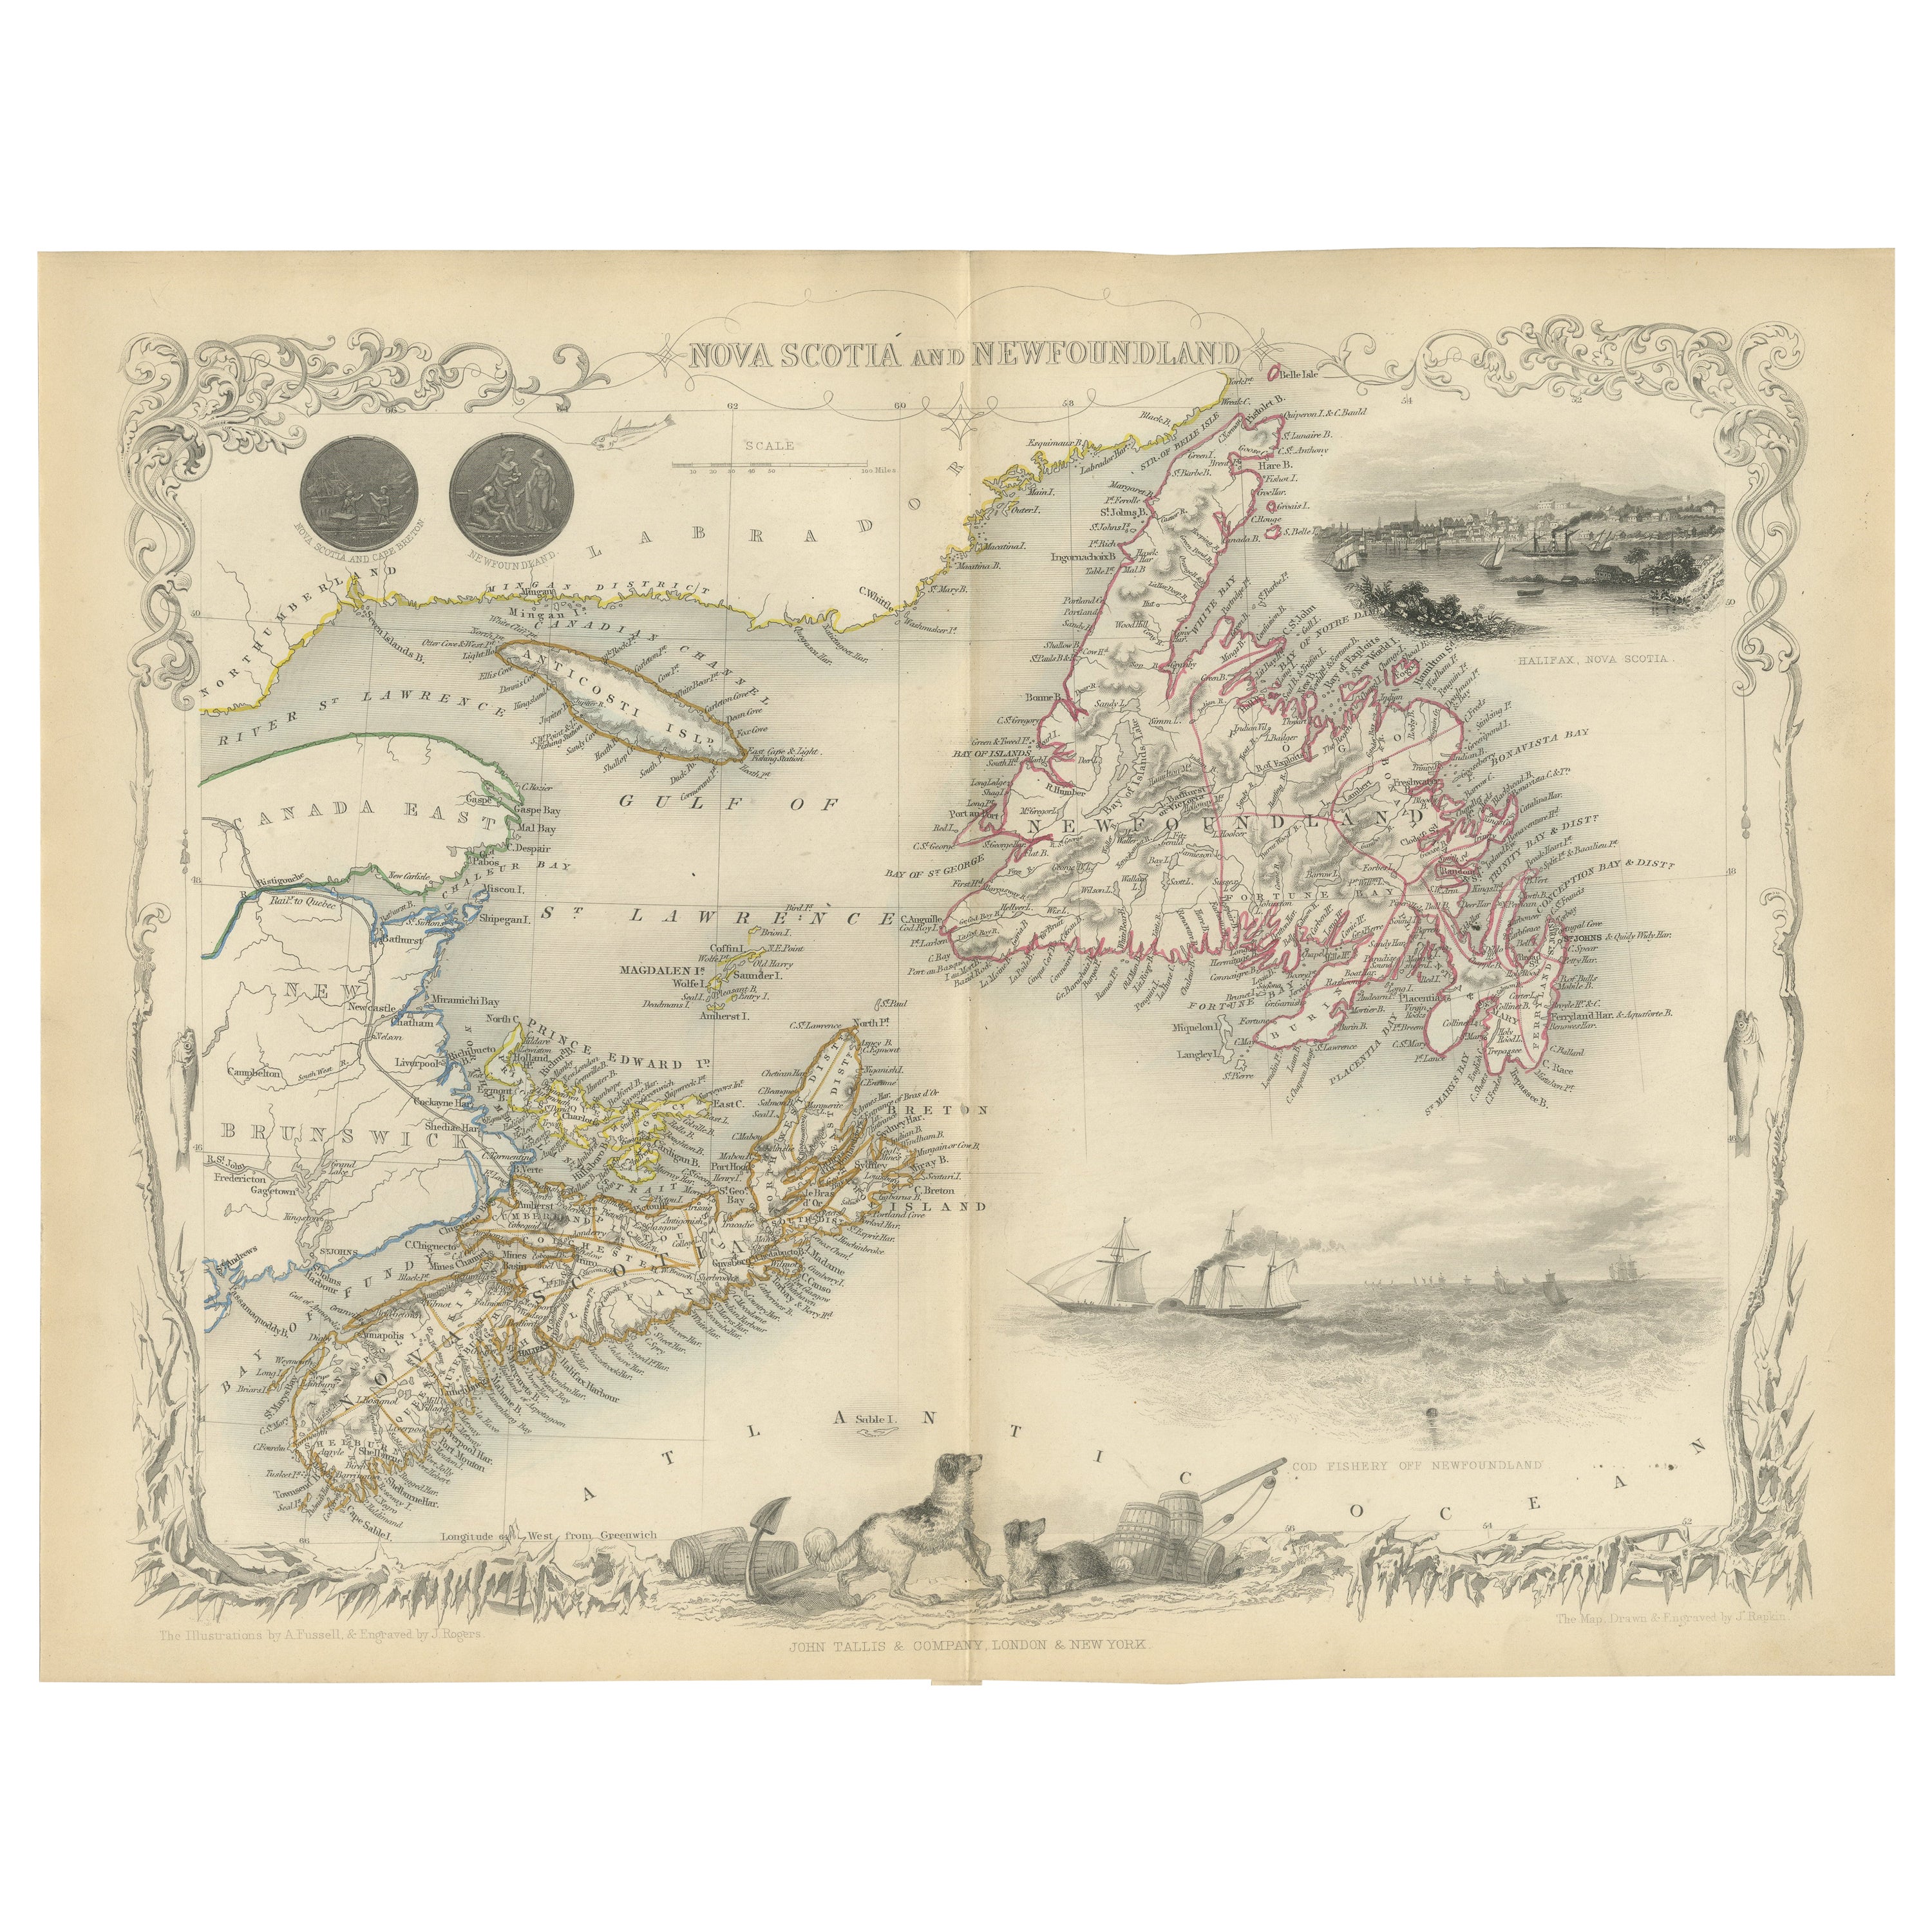 Dekorative Karte von Nova Scotia und Neufundland von John Tallis, 1851